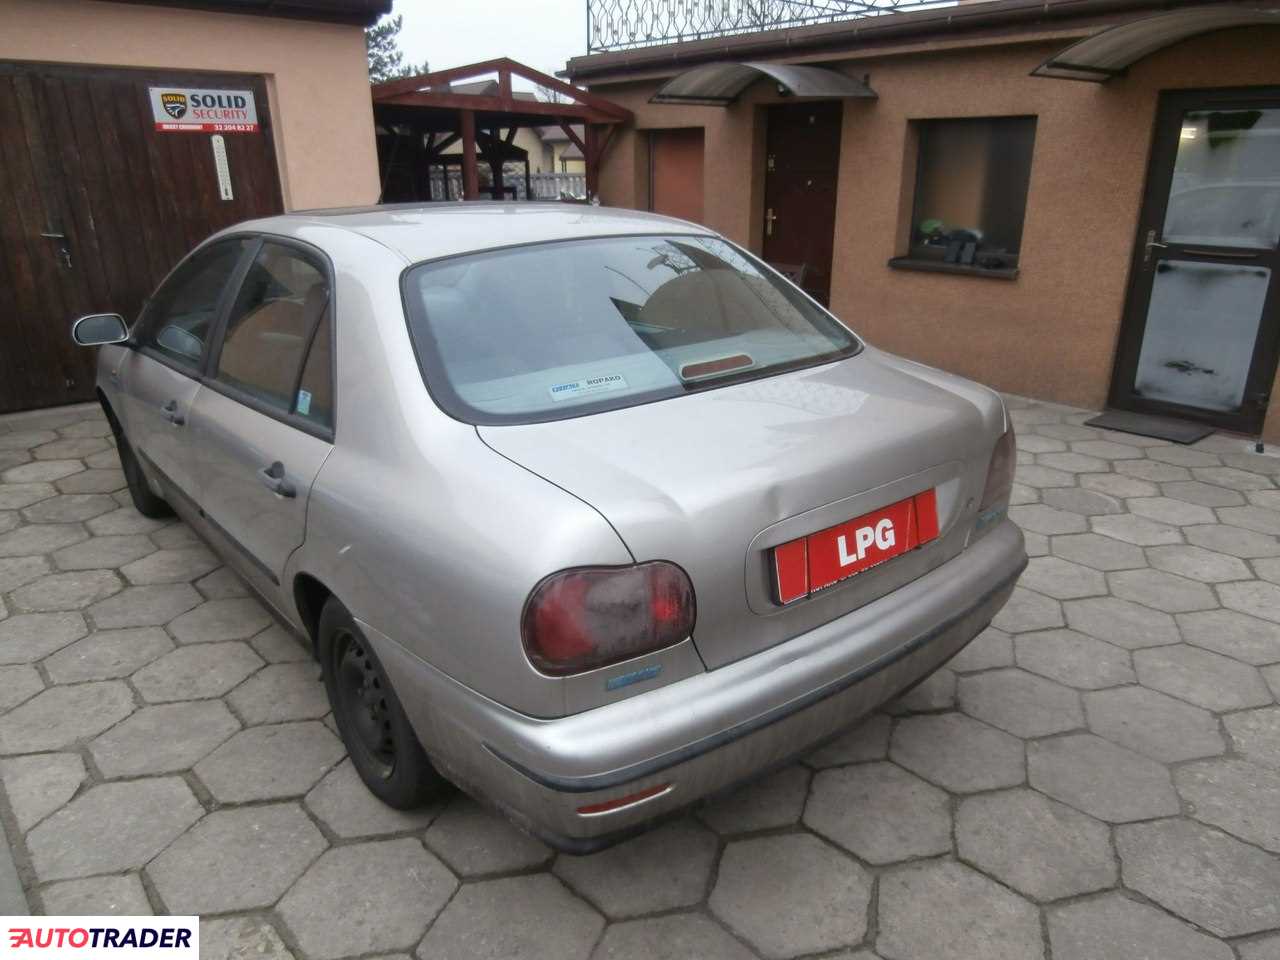 Fiat Marea 1.6 benzyna + LPG 105 KM 2000r. (Dobieszowice